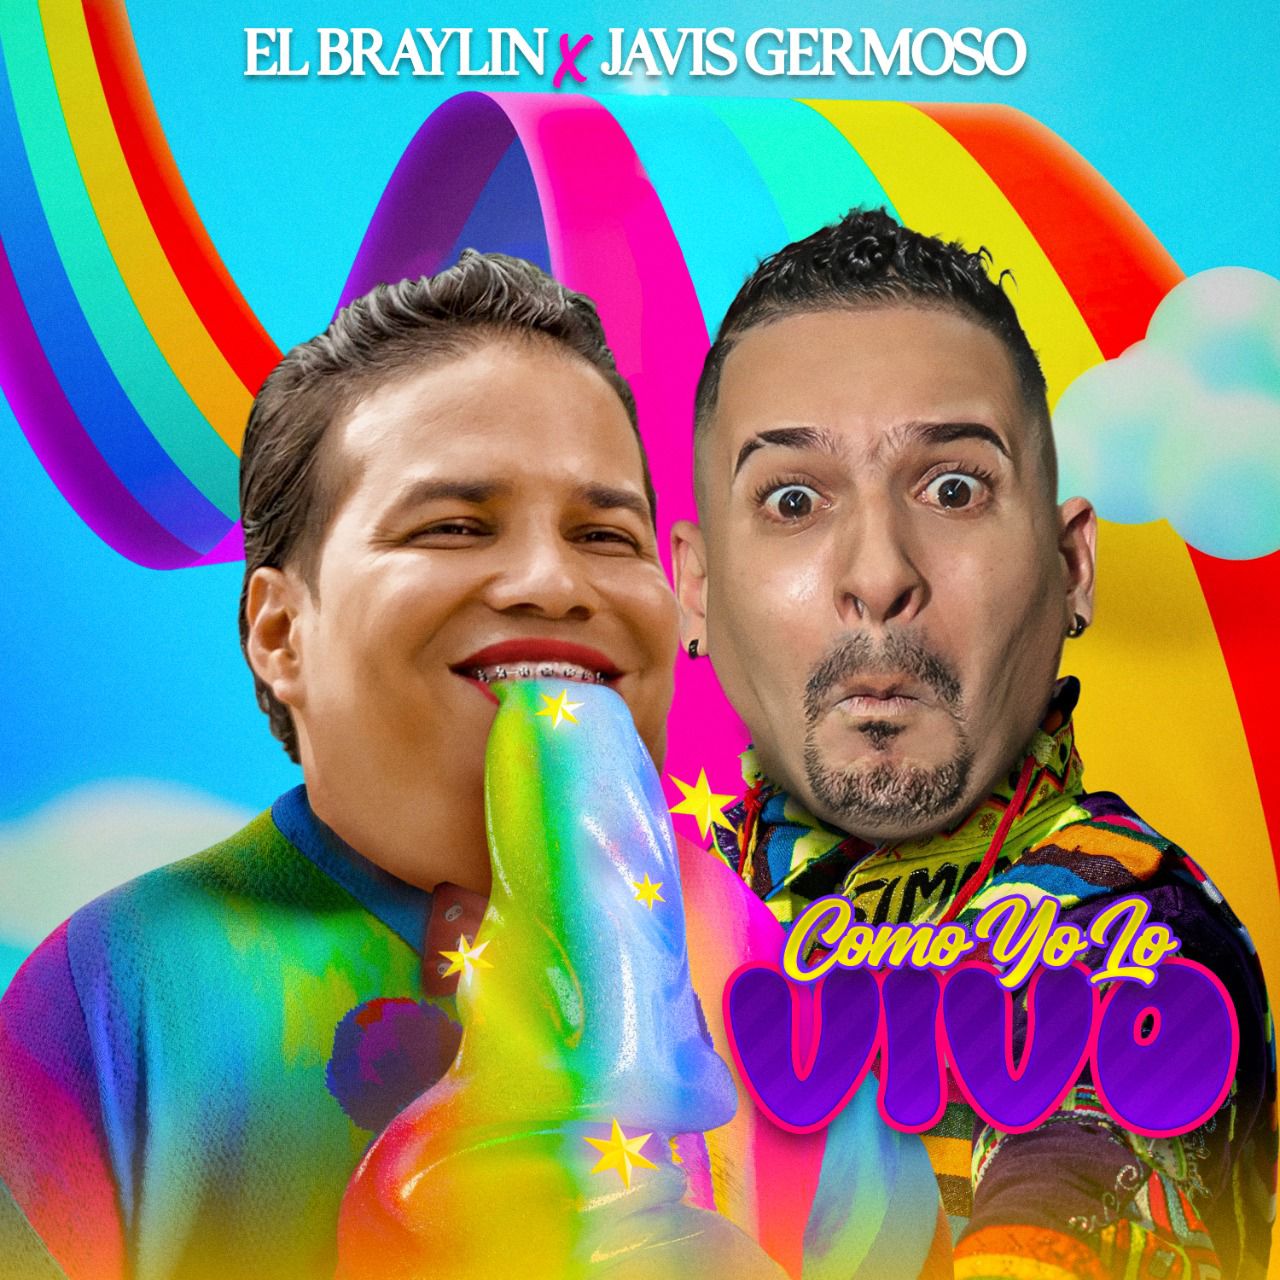 El Braylin presenta su nuevo lanzamiento en conjunto con Javis Germoso, el personaje viral dominicano.